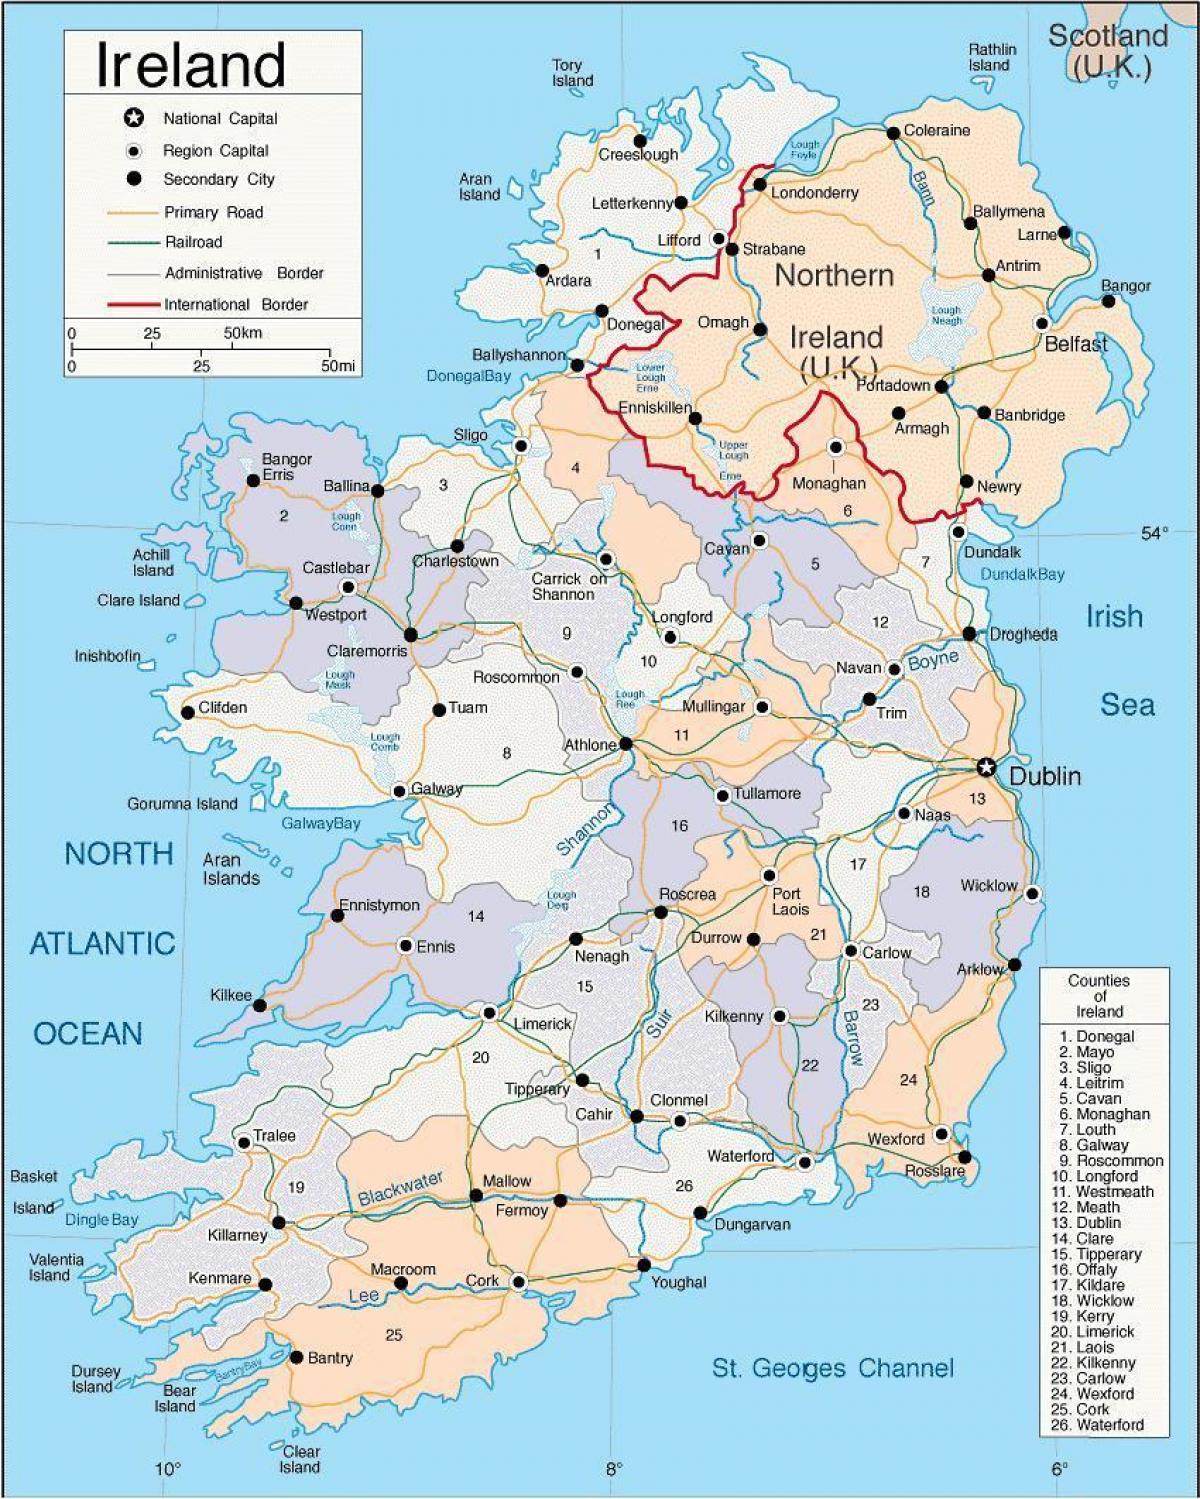 mapa da irlanda, mostrando cidades